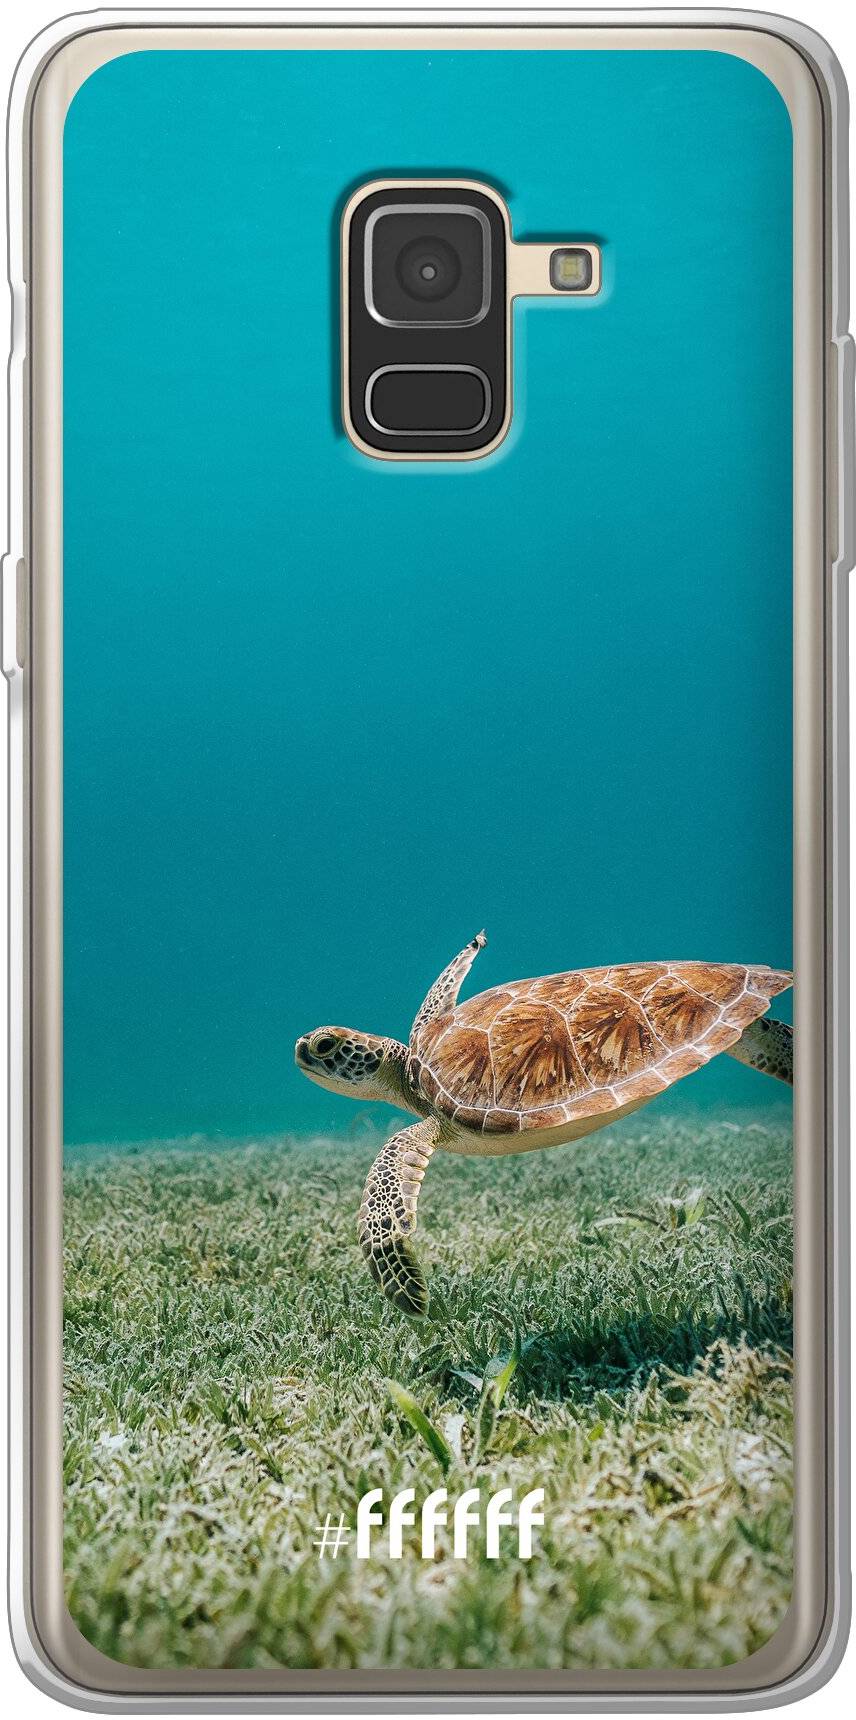 Turtle Galaxy A8 (2018)